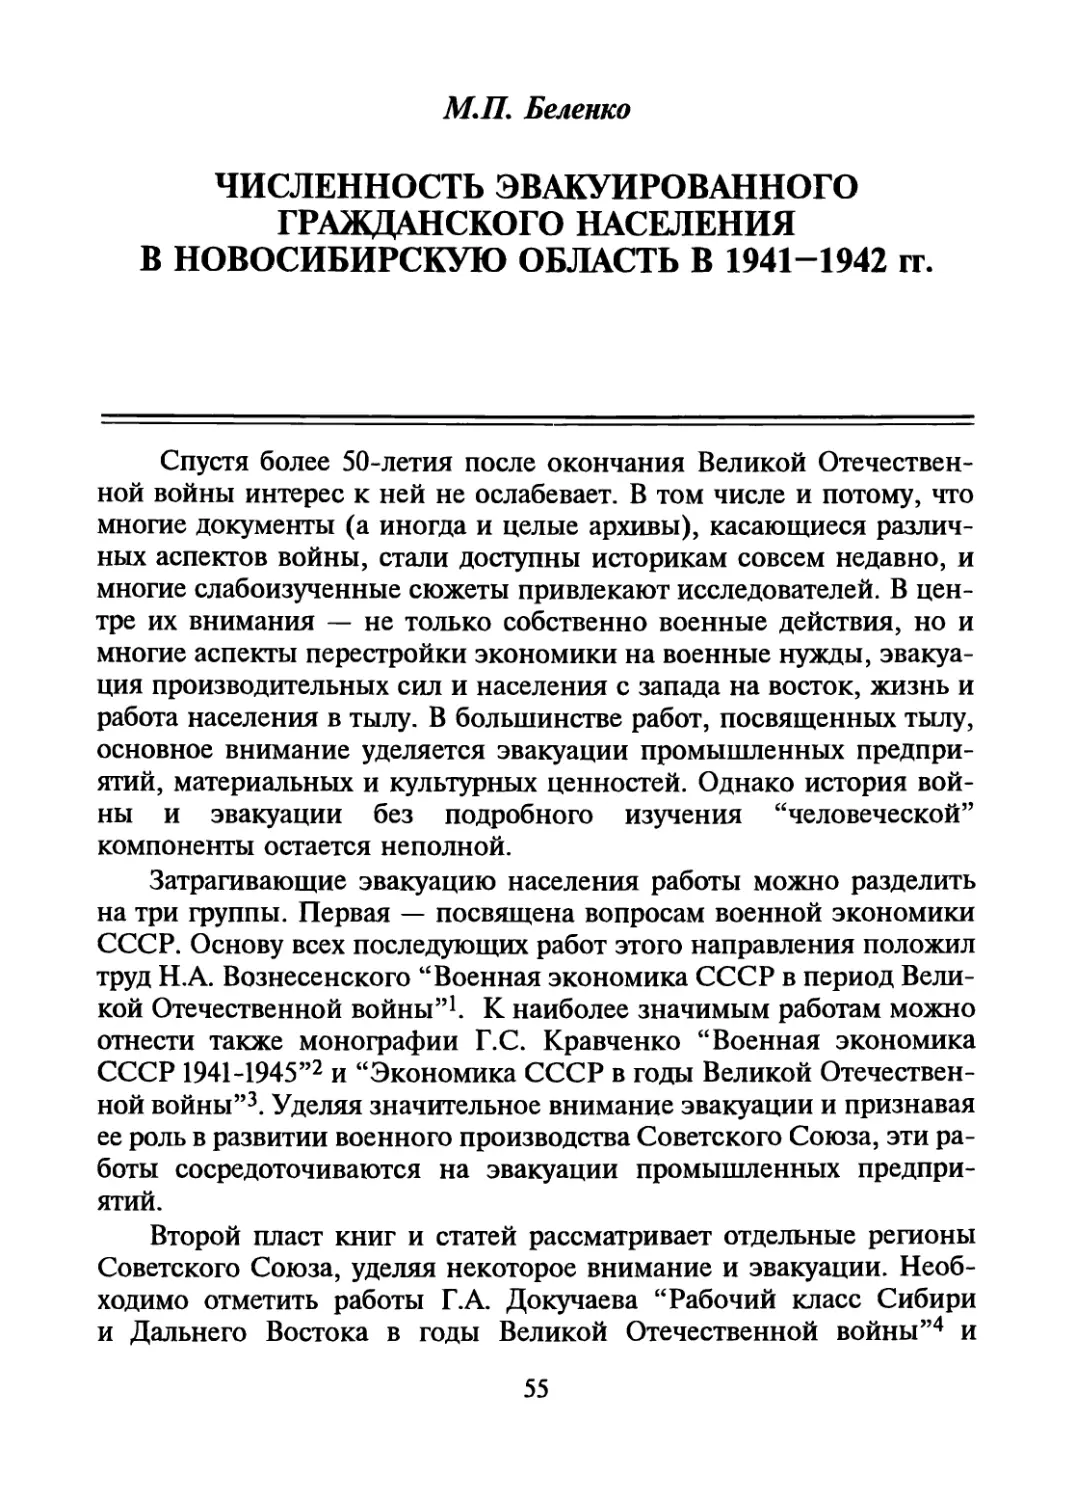 М.П. Беленко. Численность эвакуированного гражданского населения в Новосибирскую область в 1941-1942 гг